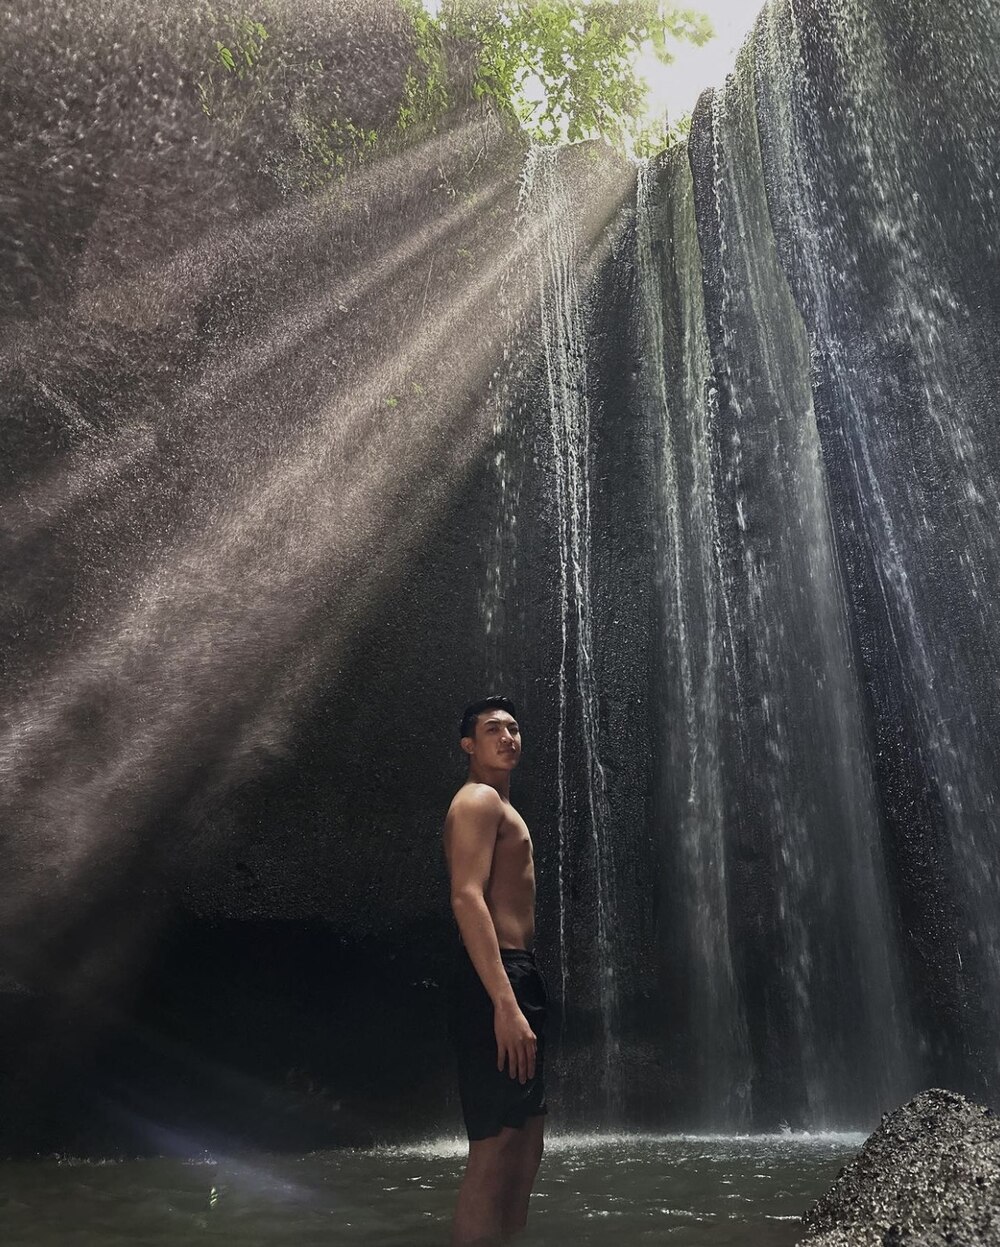 Darren Espanto Bali Indonesia solo trip - Tukad Cepung Waterfall, Bangli